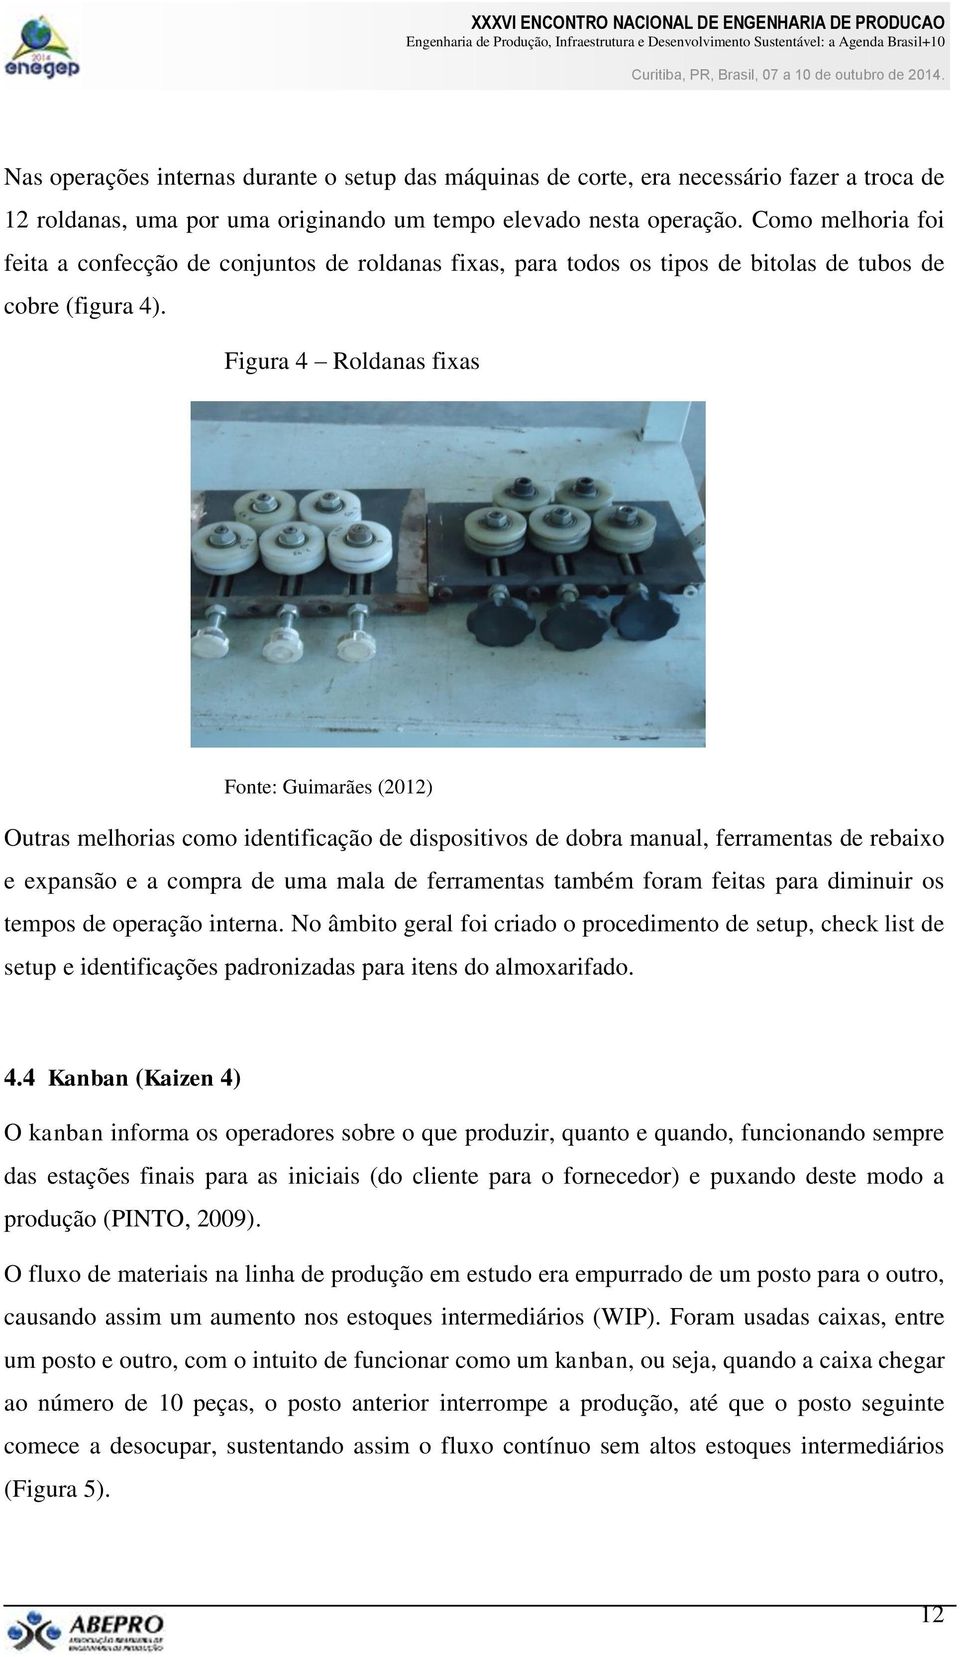 Figura 4 Roldanas fixas Fonte: Guimarães (2012) Outras melhorias como identificação de dispositivos de dobra manual, ferramentas de rebaixo e expansão e a compra de uma mala de ferramentas também